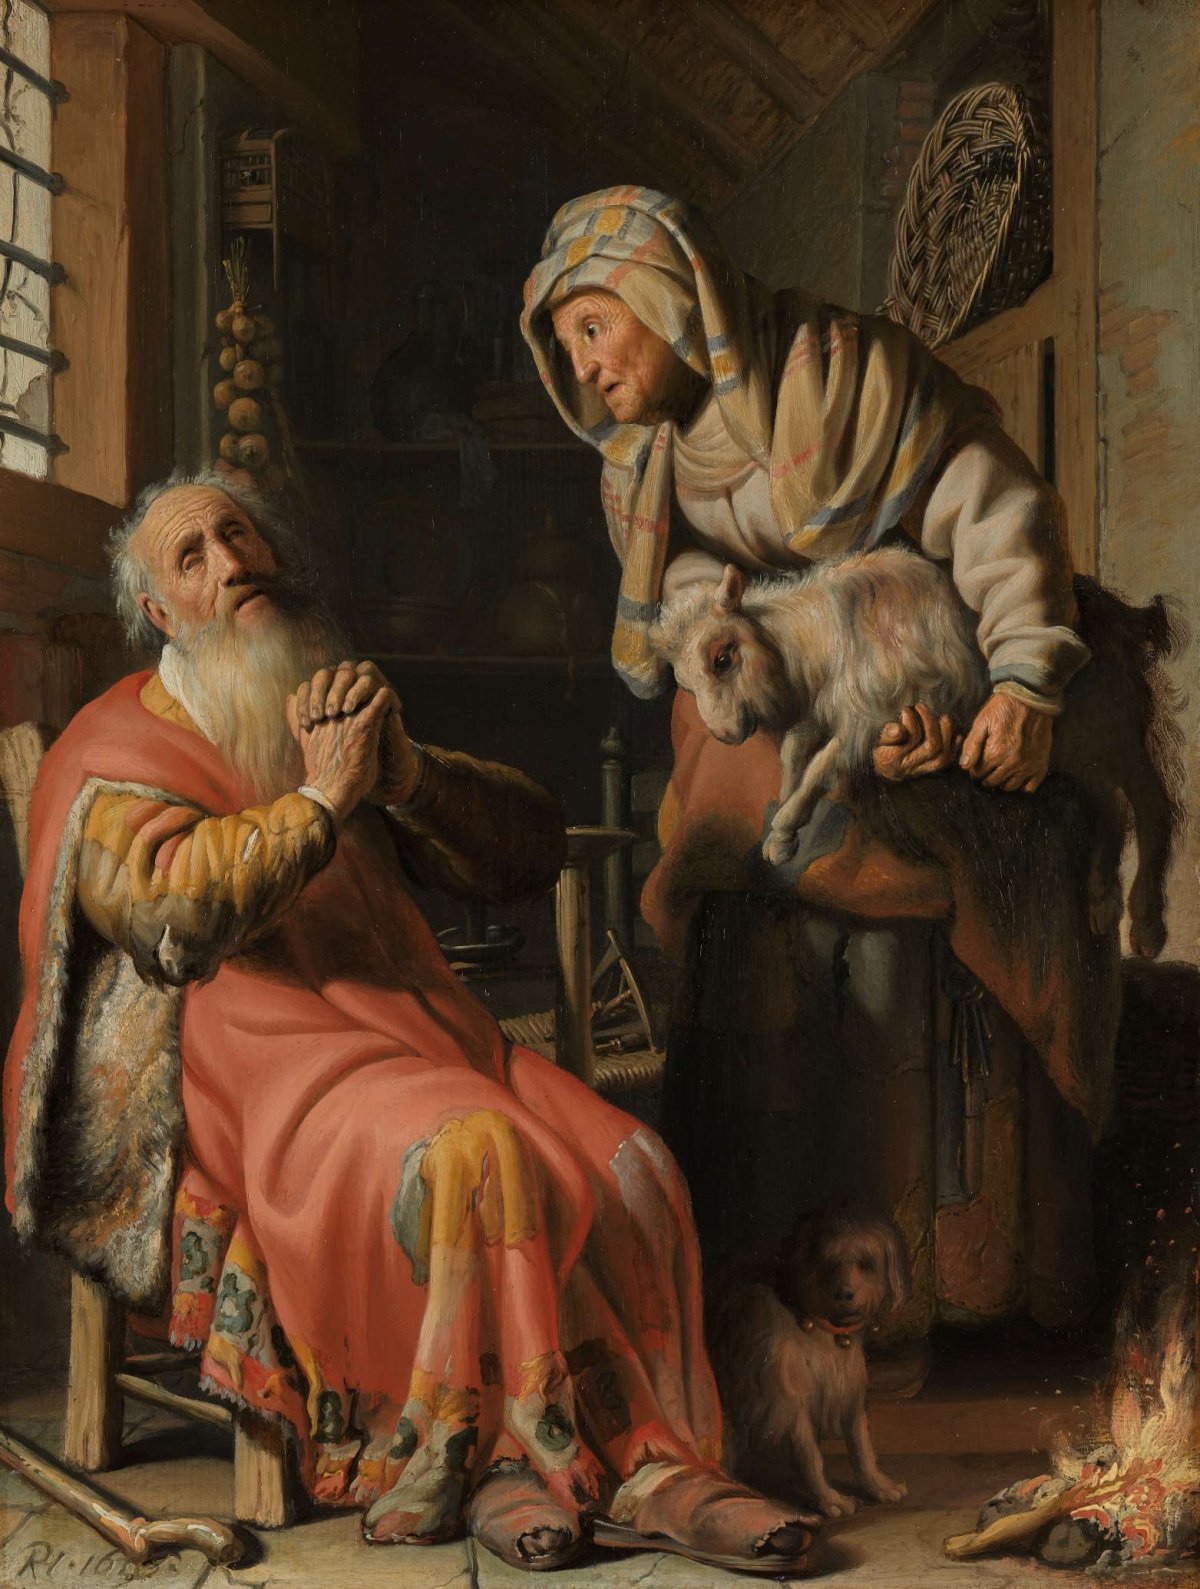 Tobit and Anna with the Kid, Rembrandt van Rijn, 1626